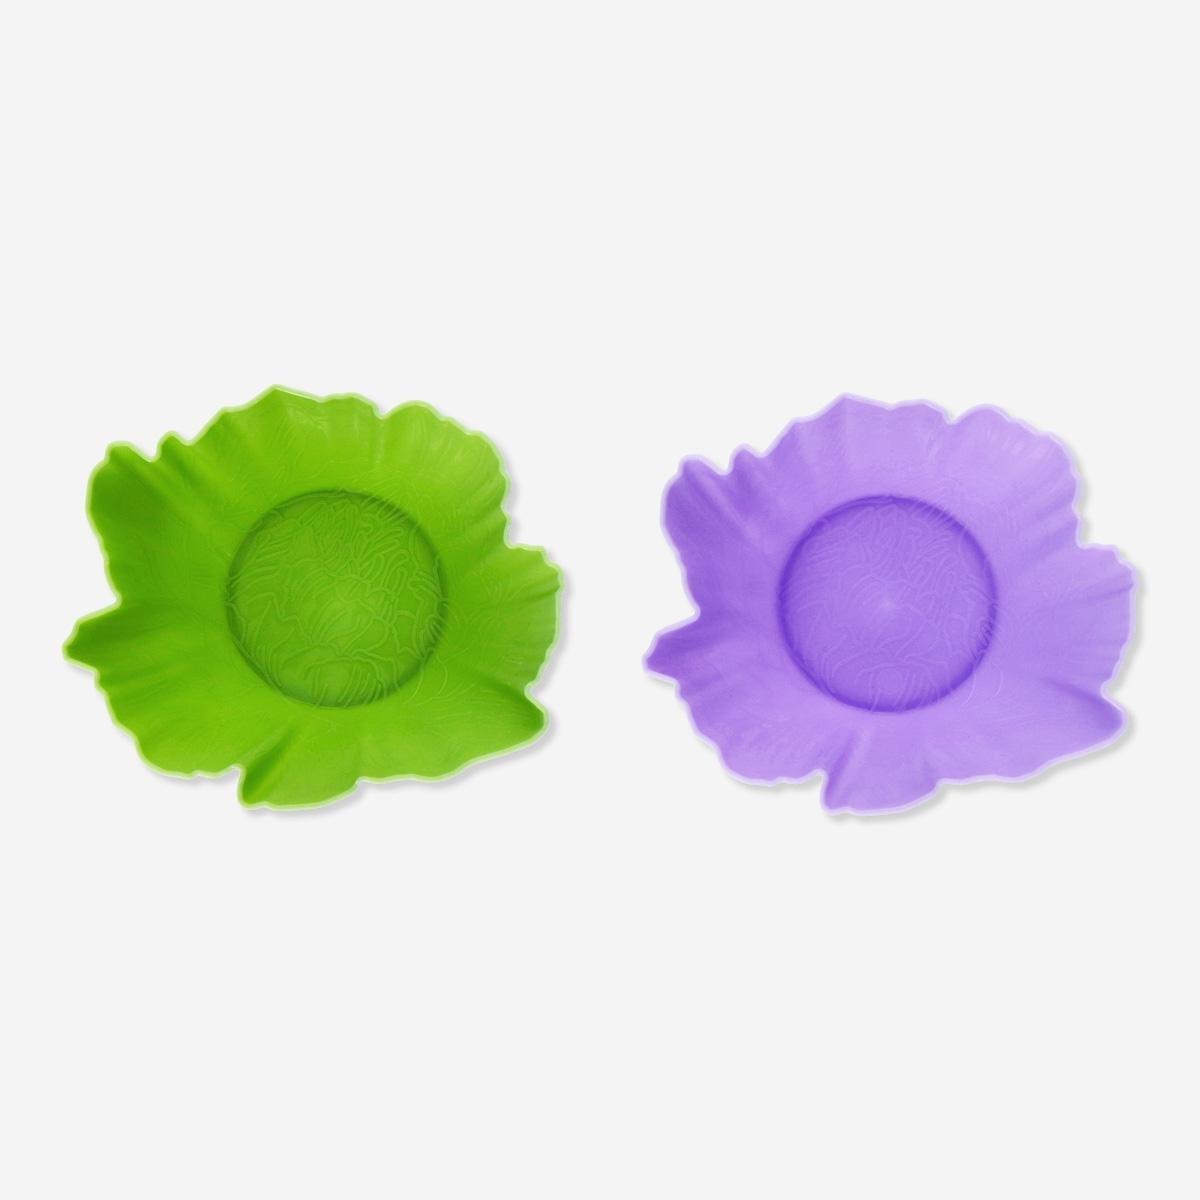 Multicolour flower bowls. 2 pcs